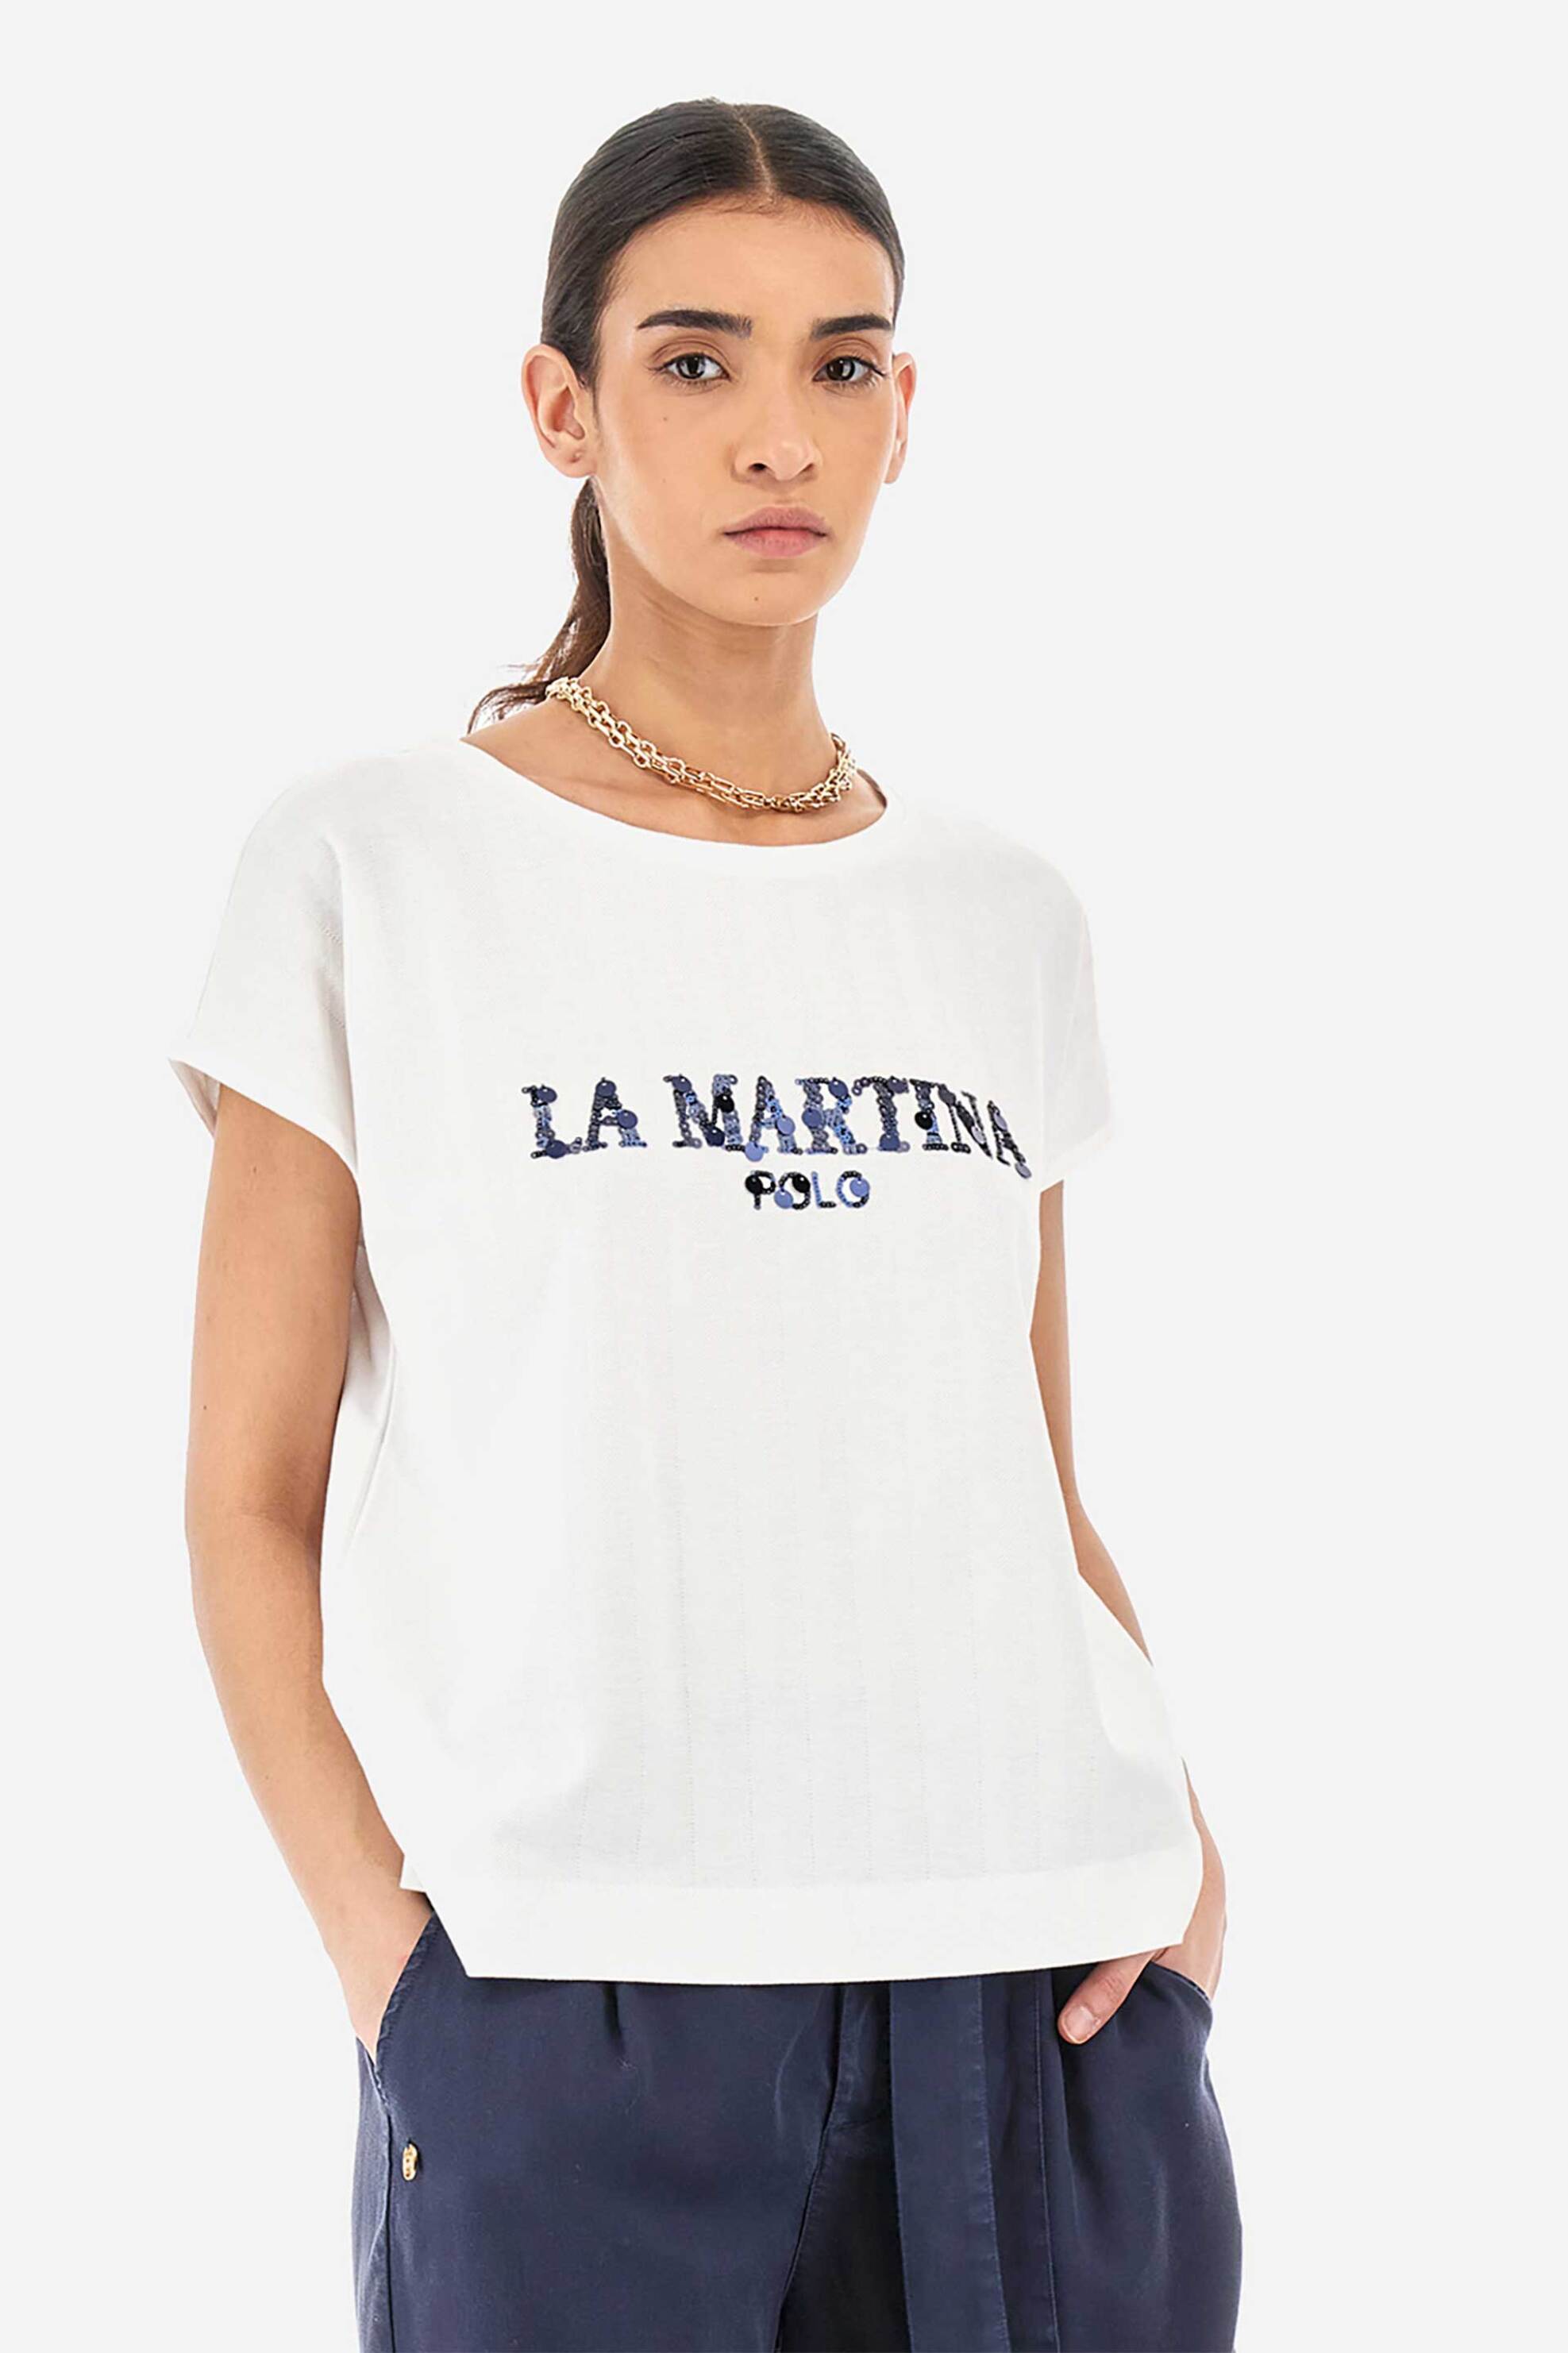 Γυναικεία Ρούχα & Αξεσουάρ > Γυναικεία Ρούχα > Γυναικεία Τοπ > Γυναικεία T-Shirts La Martina γυναικείο T-shirt μονόχρωμο βαμβακερό με λογότυπο με παγιέτες "Yennefer" - YWR304-JS394 Λευκό